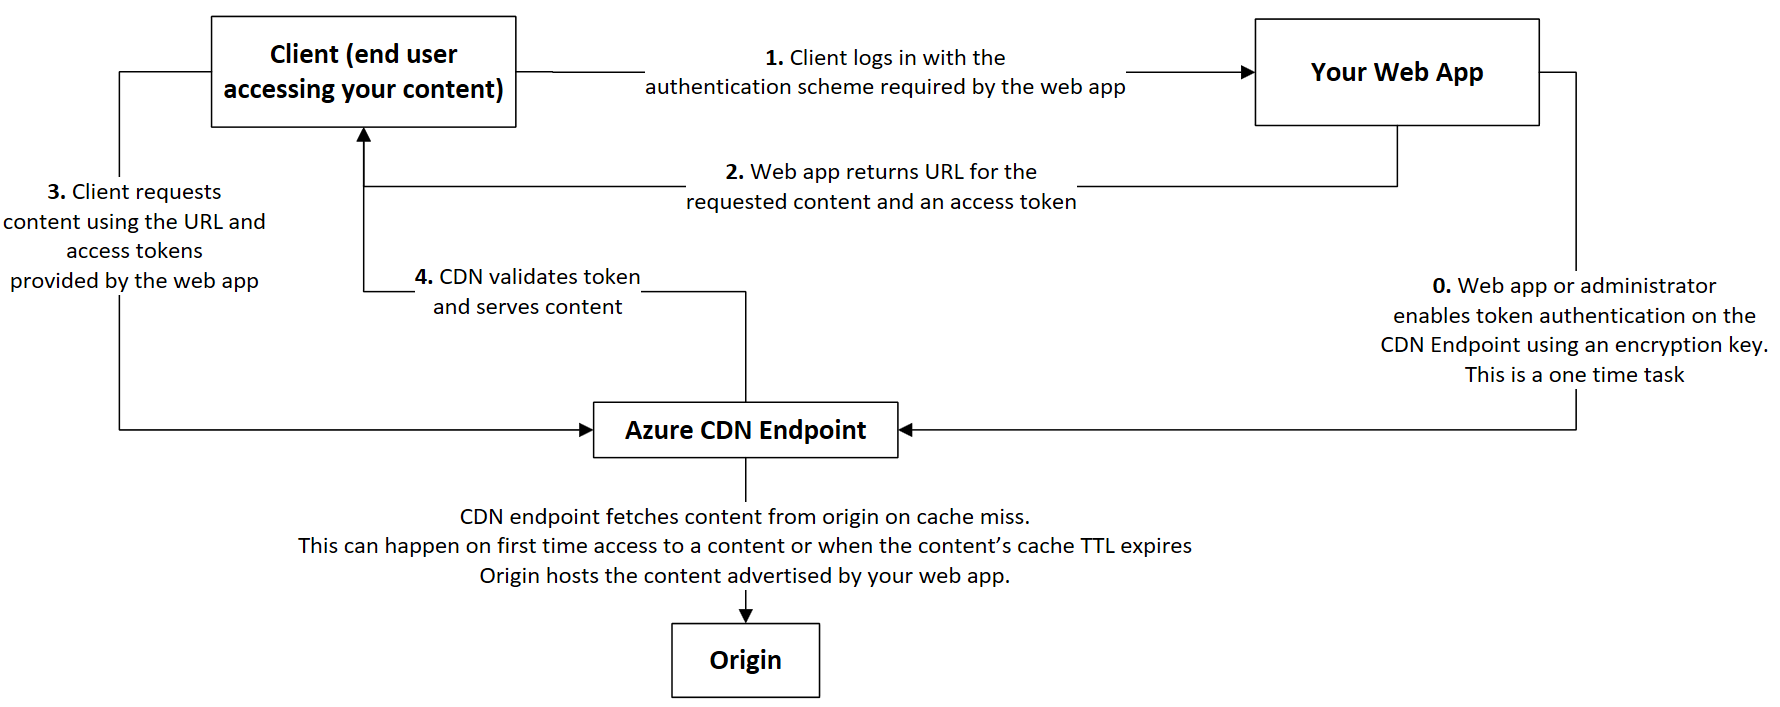 Captura de tela do fluxo de trabalho de autenticação de token da rede de distribuição de conteúdo.